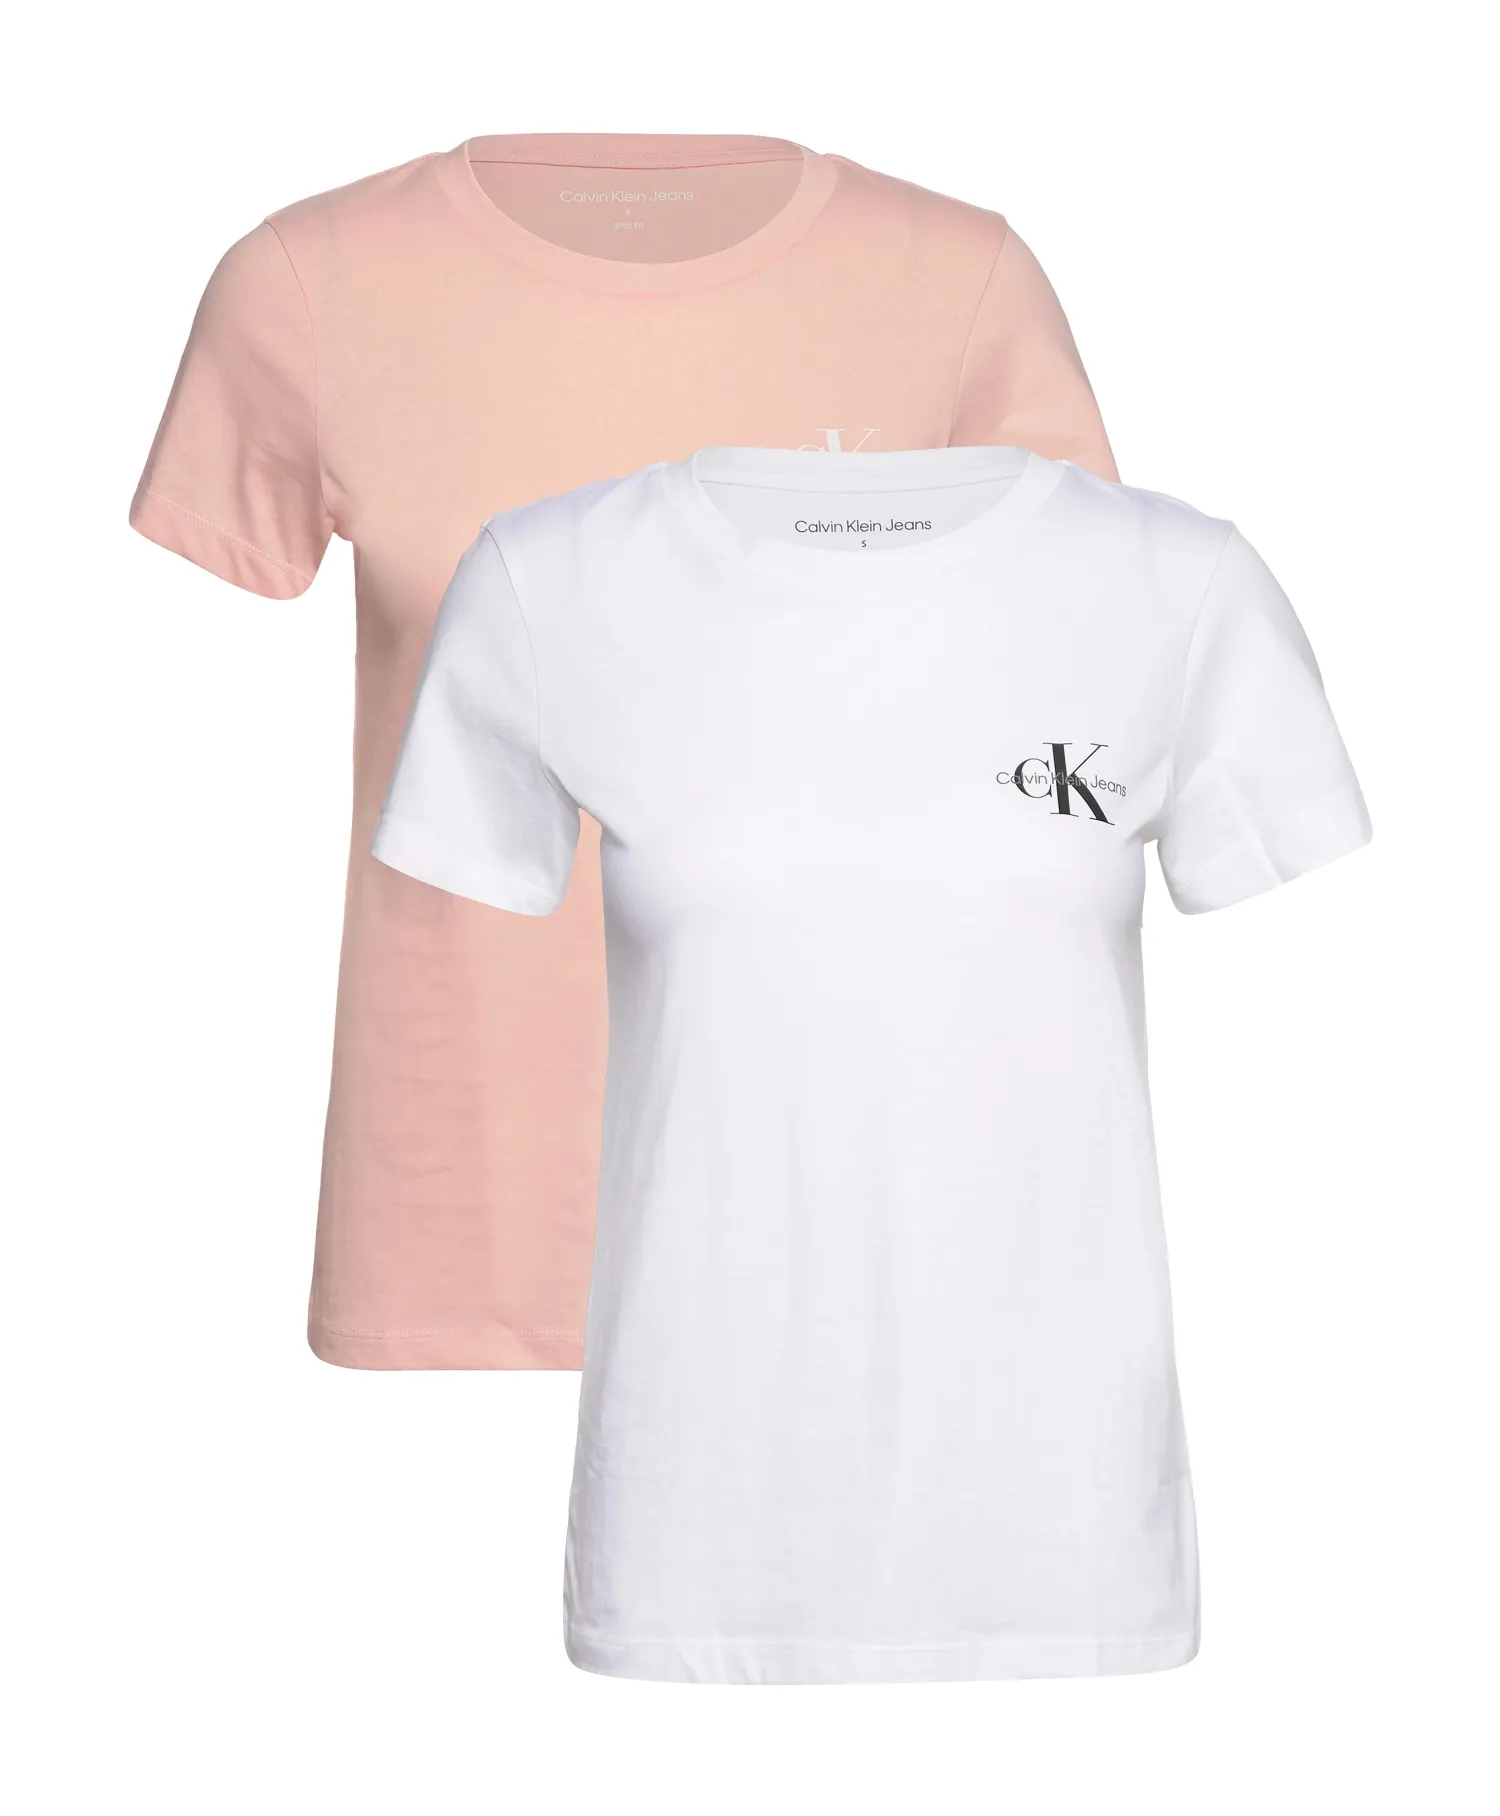 CALVIN KLEIN JEANS 2 Pack Slim T-Shirt - Faint Blossom/Bright White |  Choice+Attitude